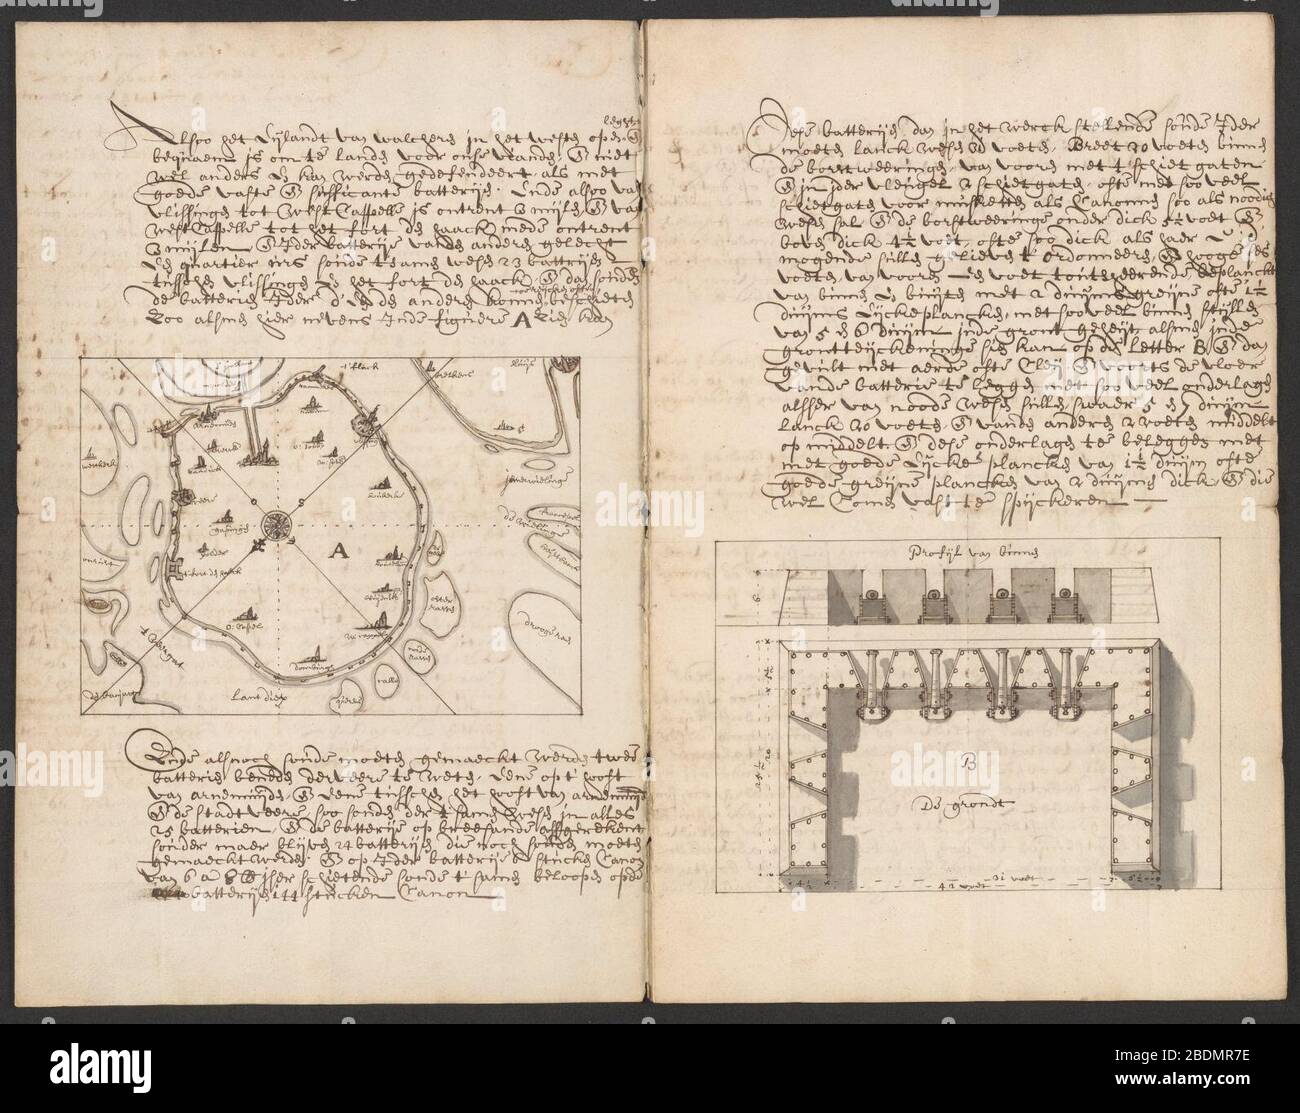 Handschriftenverzameling - Verdedigingsplan Walcheren - NL-MdbZA 33.1 341 2. Stock Photo